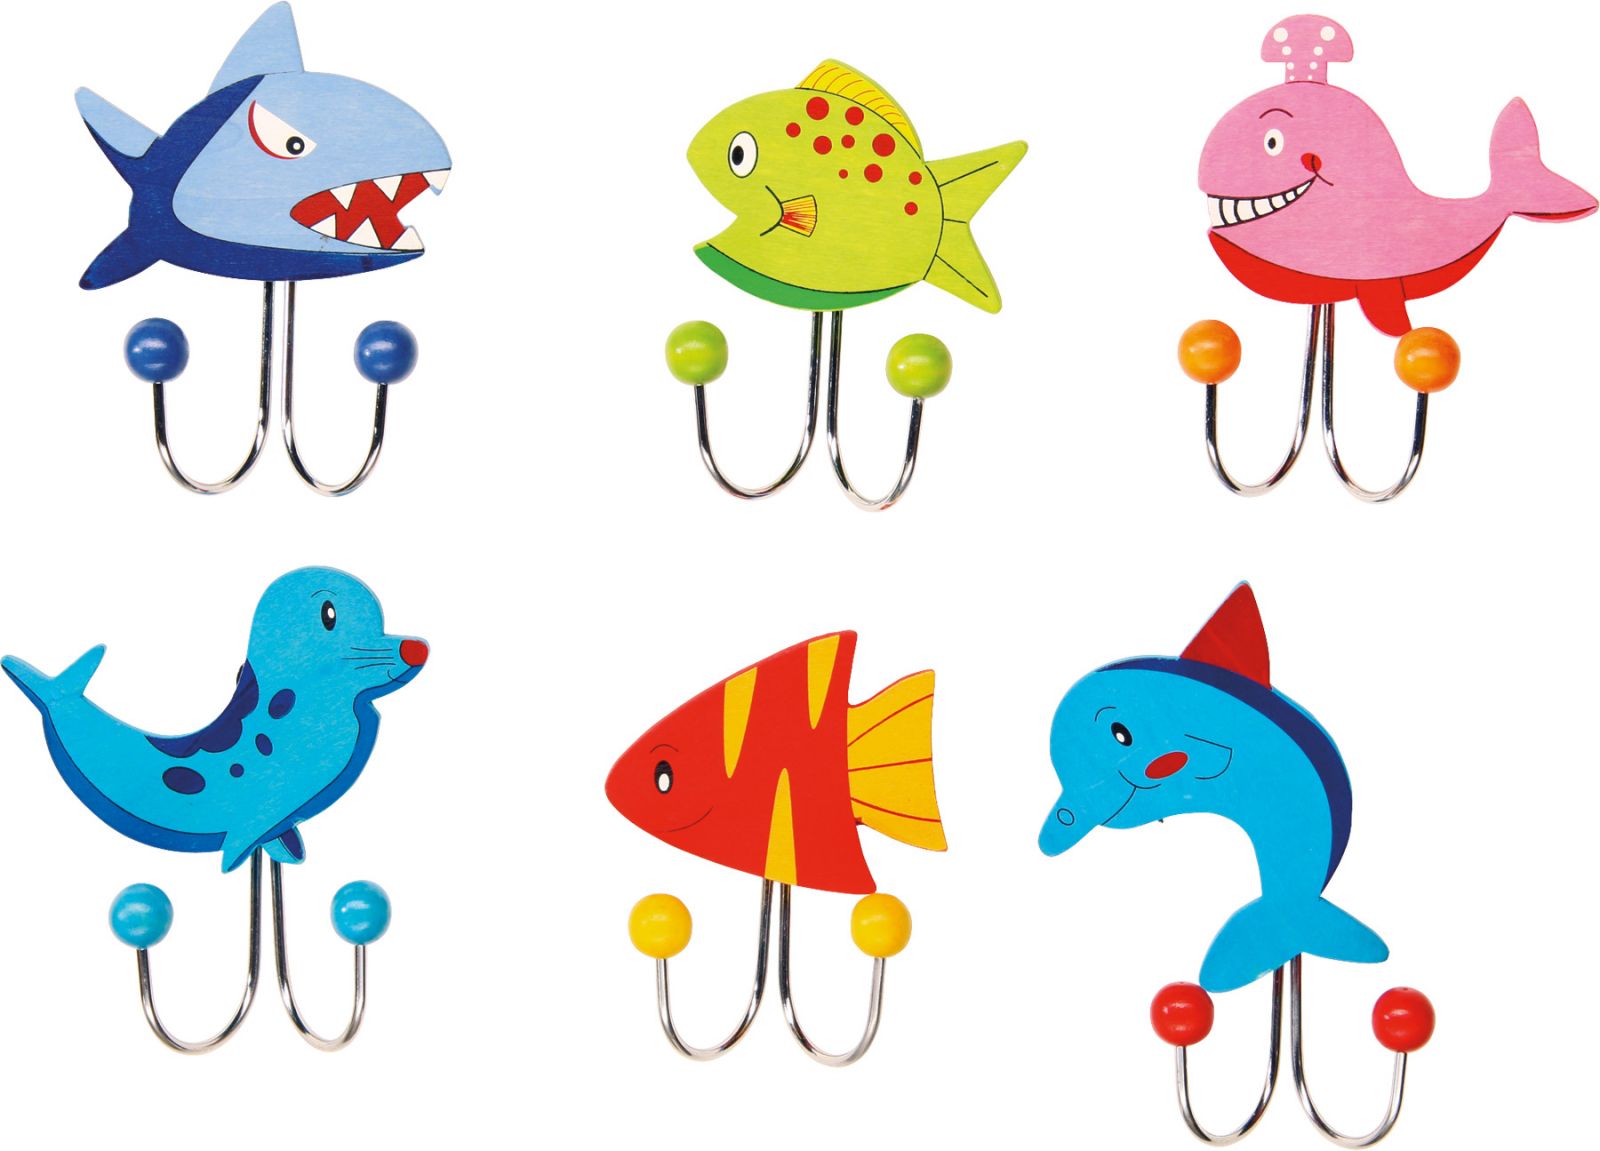 Dřevěné hračky Věšák - Mořská zvířátka 1ks modrý žralok Věšák - Mořská zvířátka 1ks modrý žralok Small foot by Legler